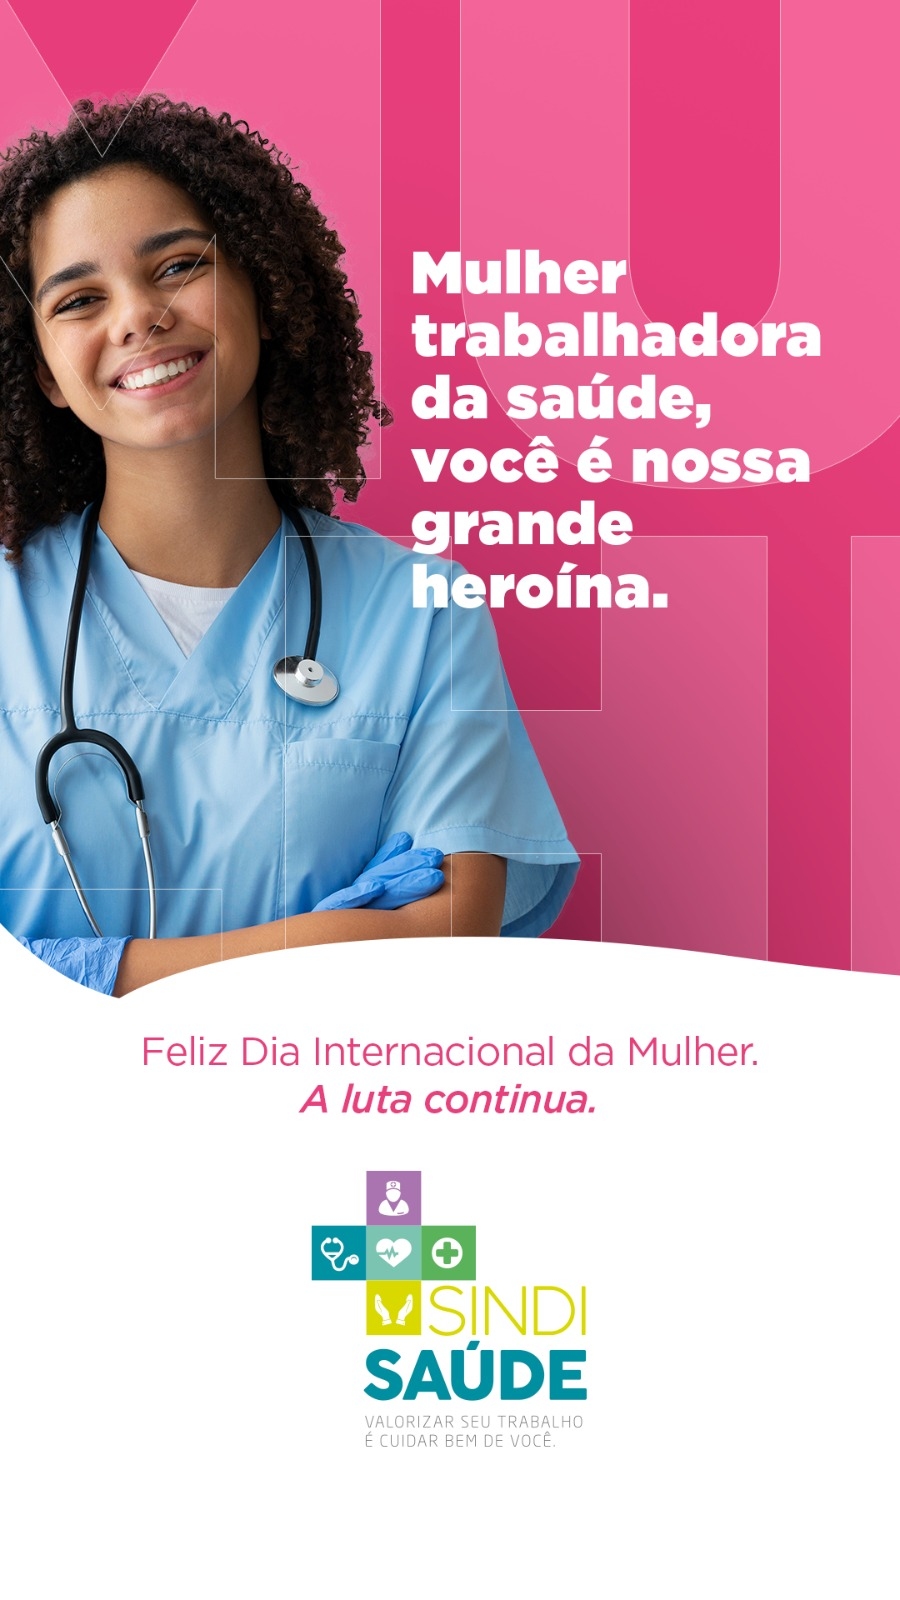 8 de Março - Mulheres são mais de 80% da força de trabalho na saúde